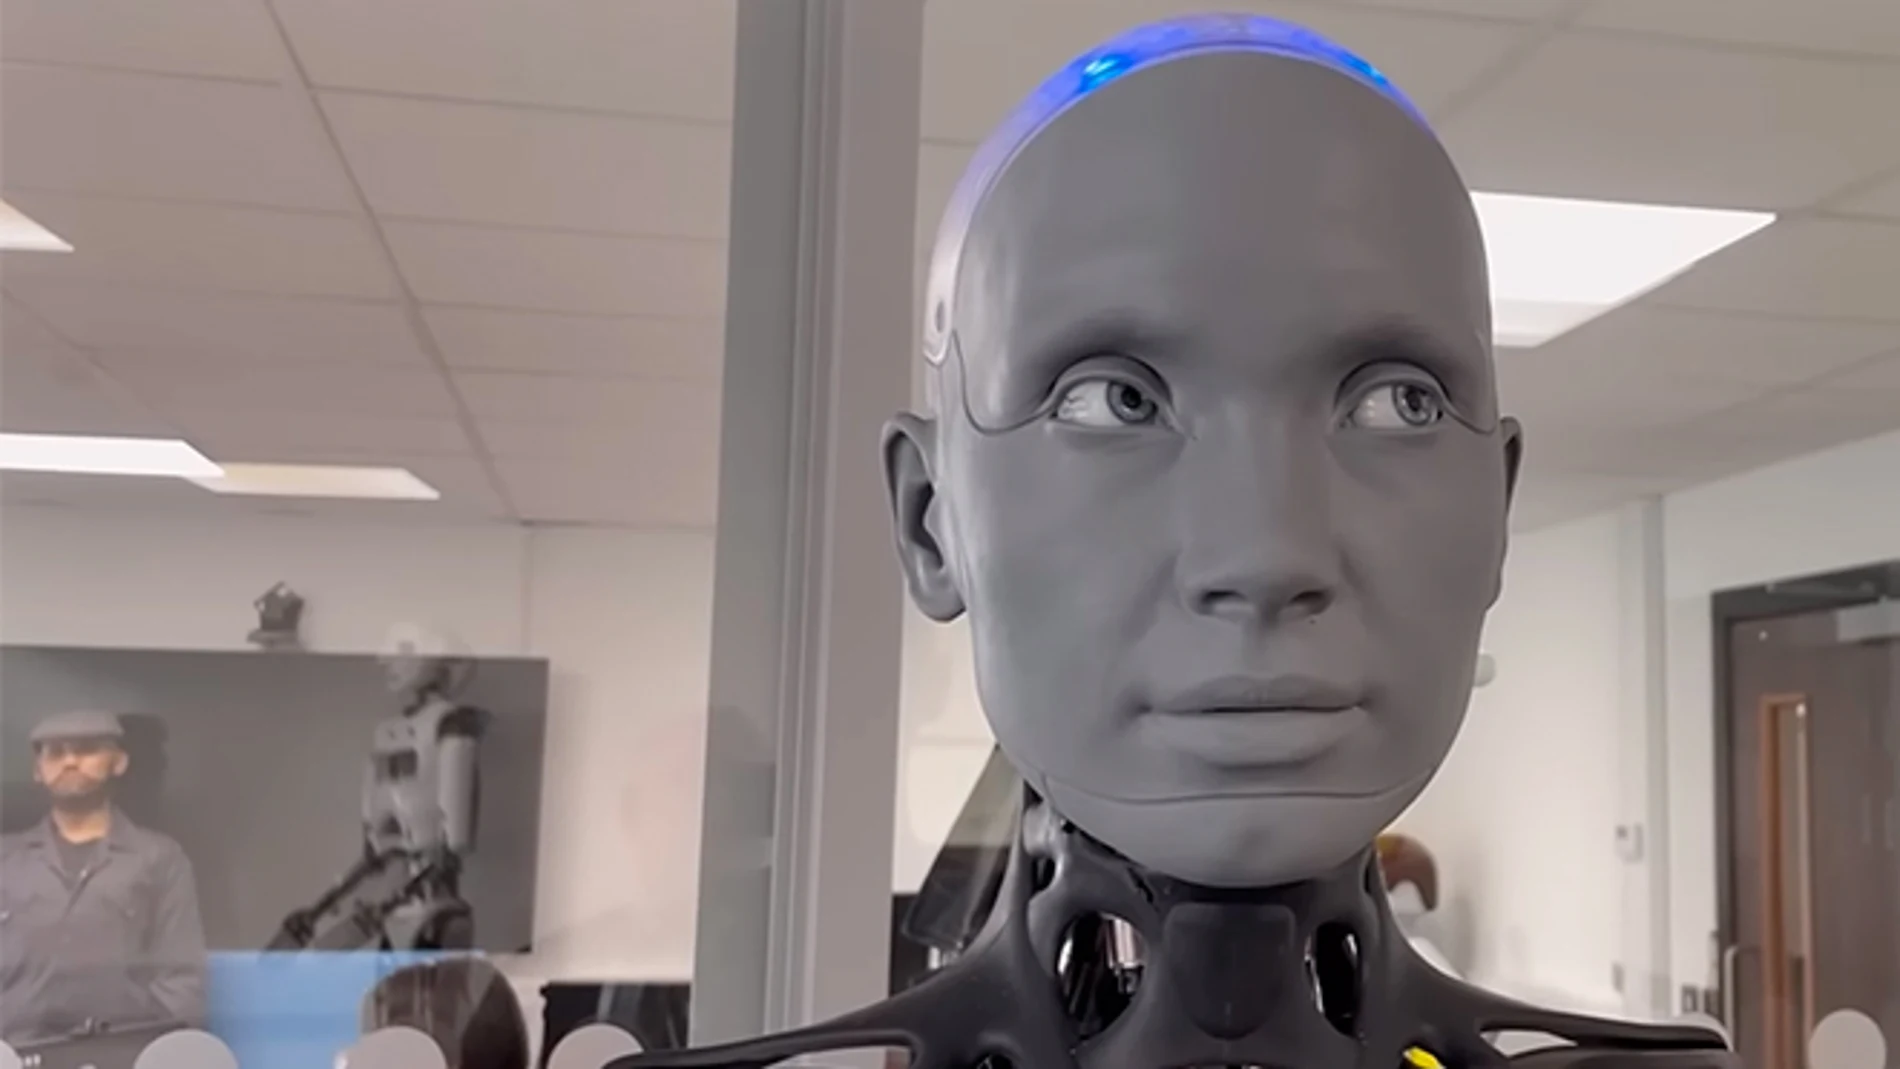 Ameca, el inquietante robot humanoide que usa la IA ChatGPT y conversa en varios idiomas.